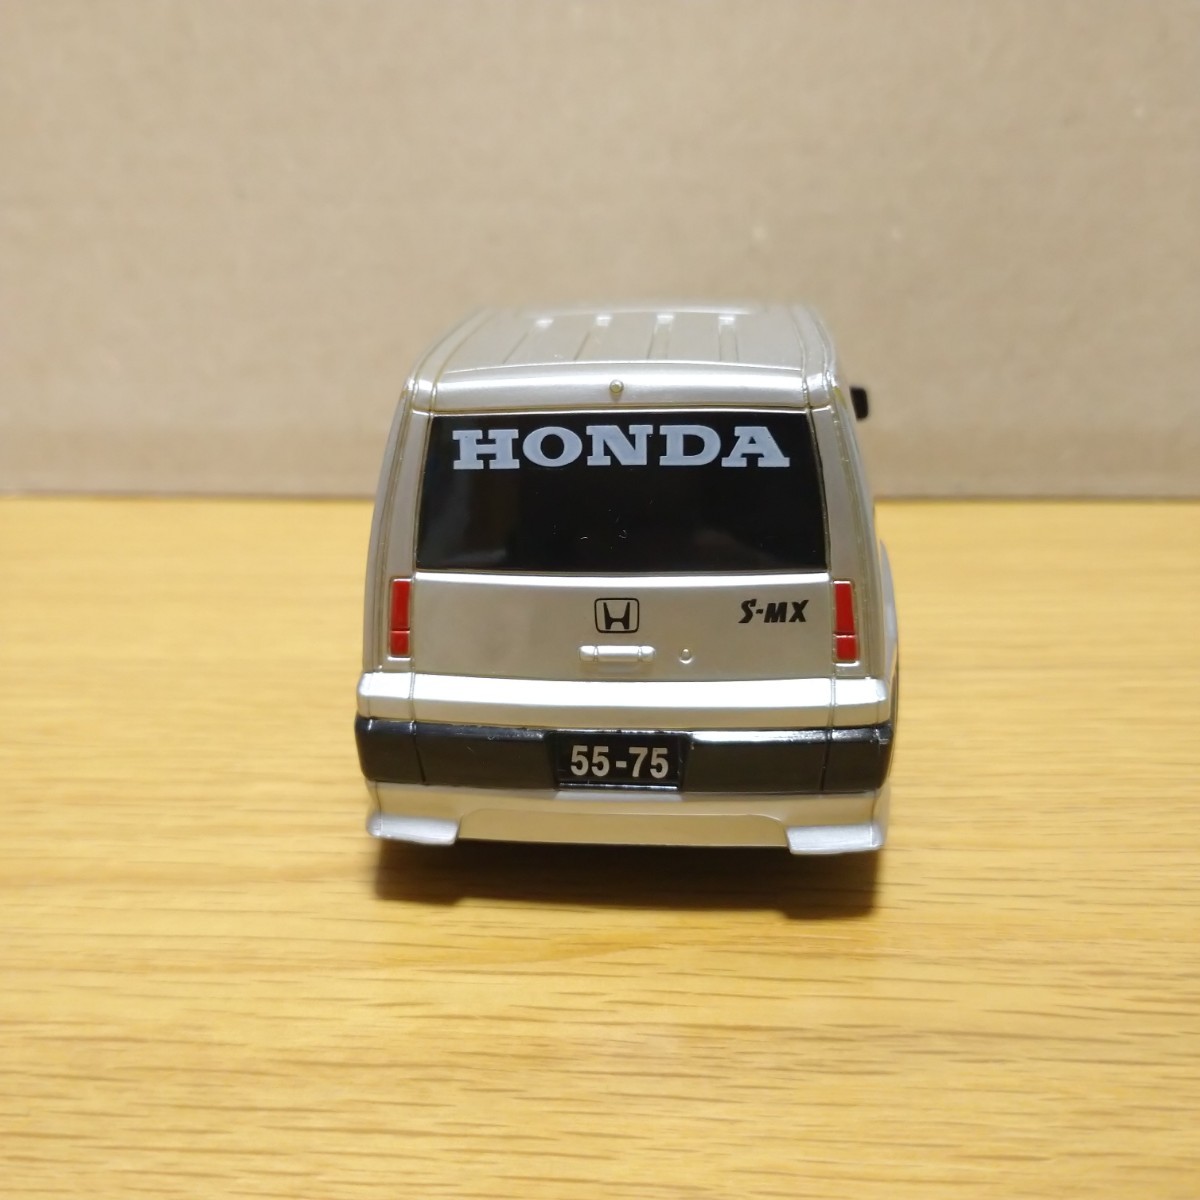 HONDA S-MX ホンダ SMX プルバックカー プルバック コレクション ドライブタウン ミニカー minicar limited car collection s mx_画像5